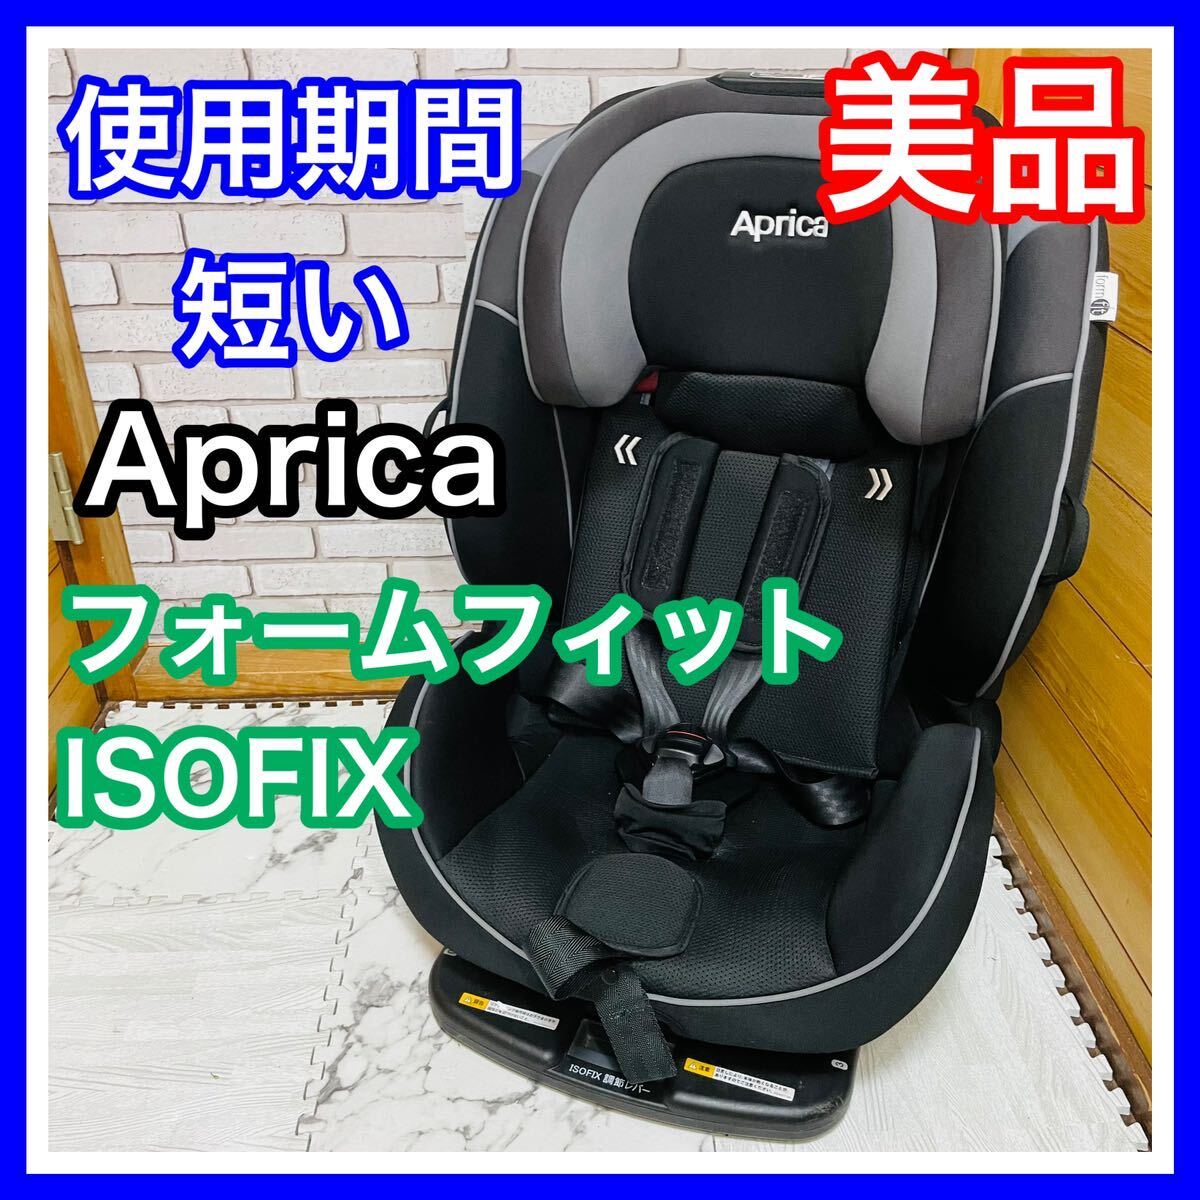  быстрое решение использование 4 месяцев прекрасный товар Aprica пена Fit ISOFIX детское сиденье включая доставку 5000 иен . снижена цена кто раньше, тот побеждает уборная settled Aprica